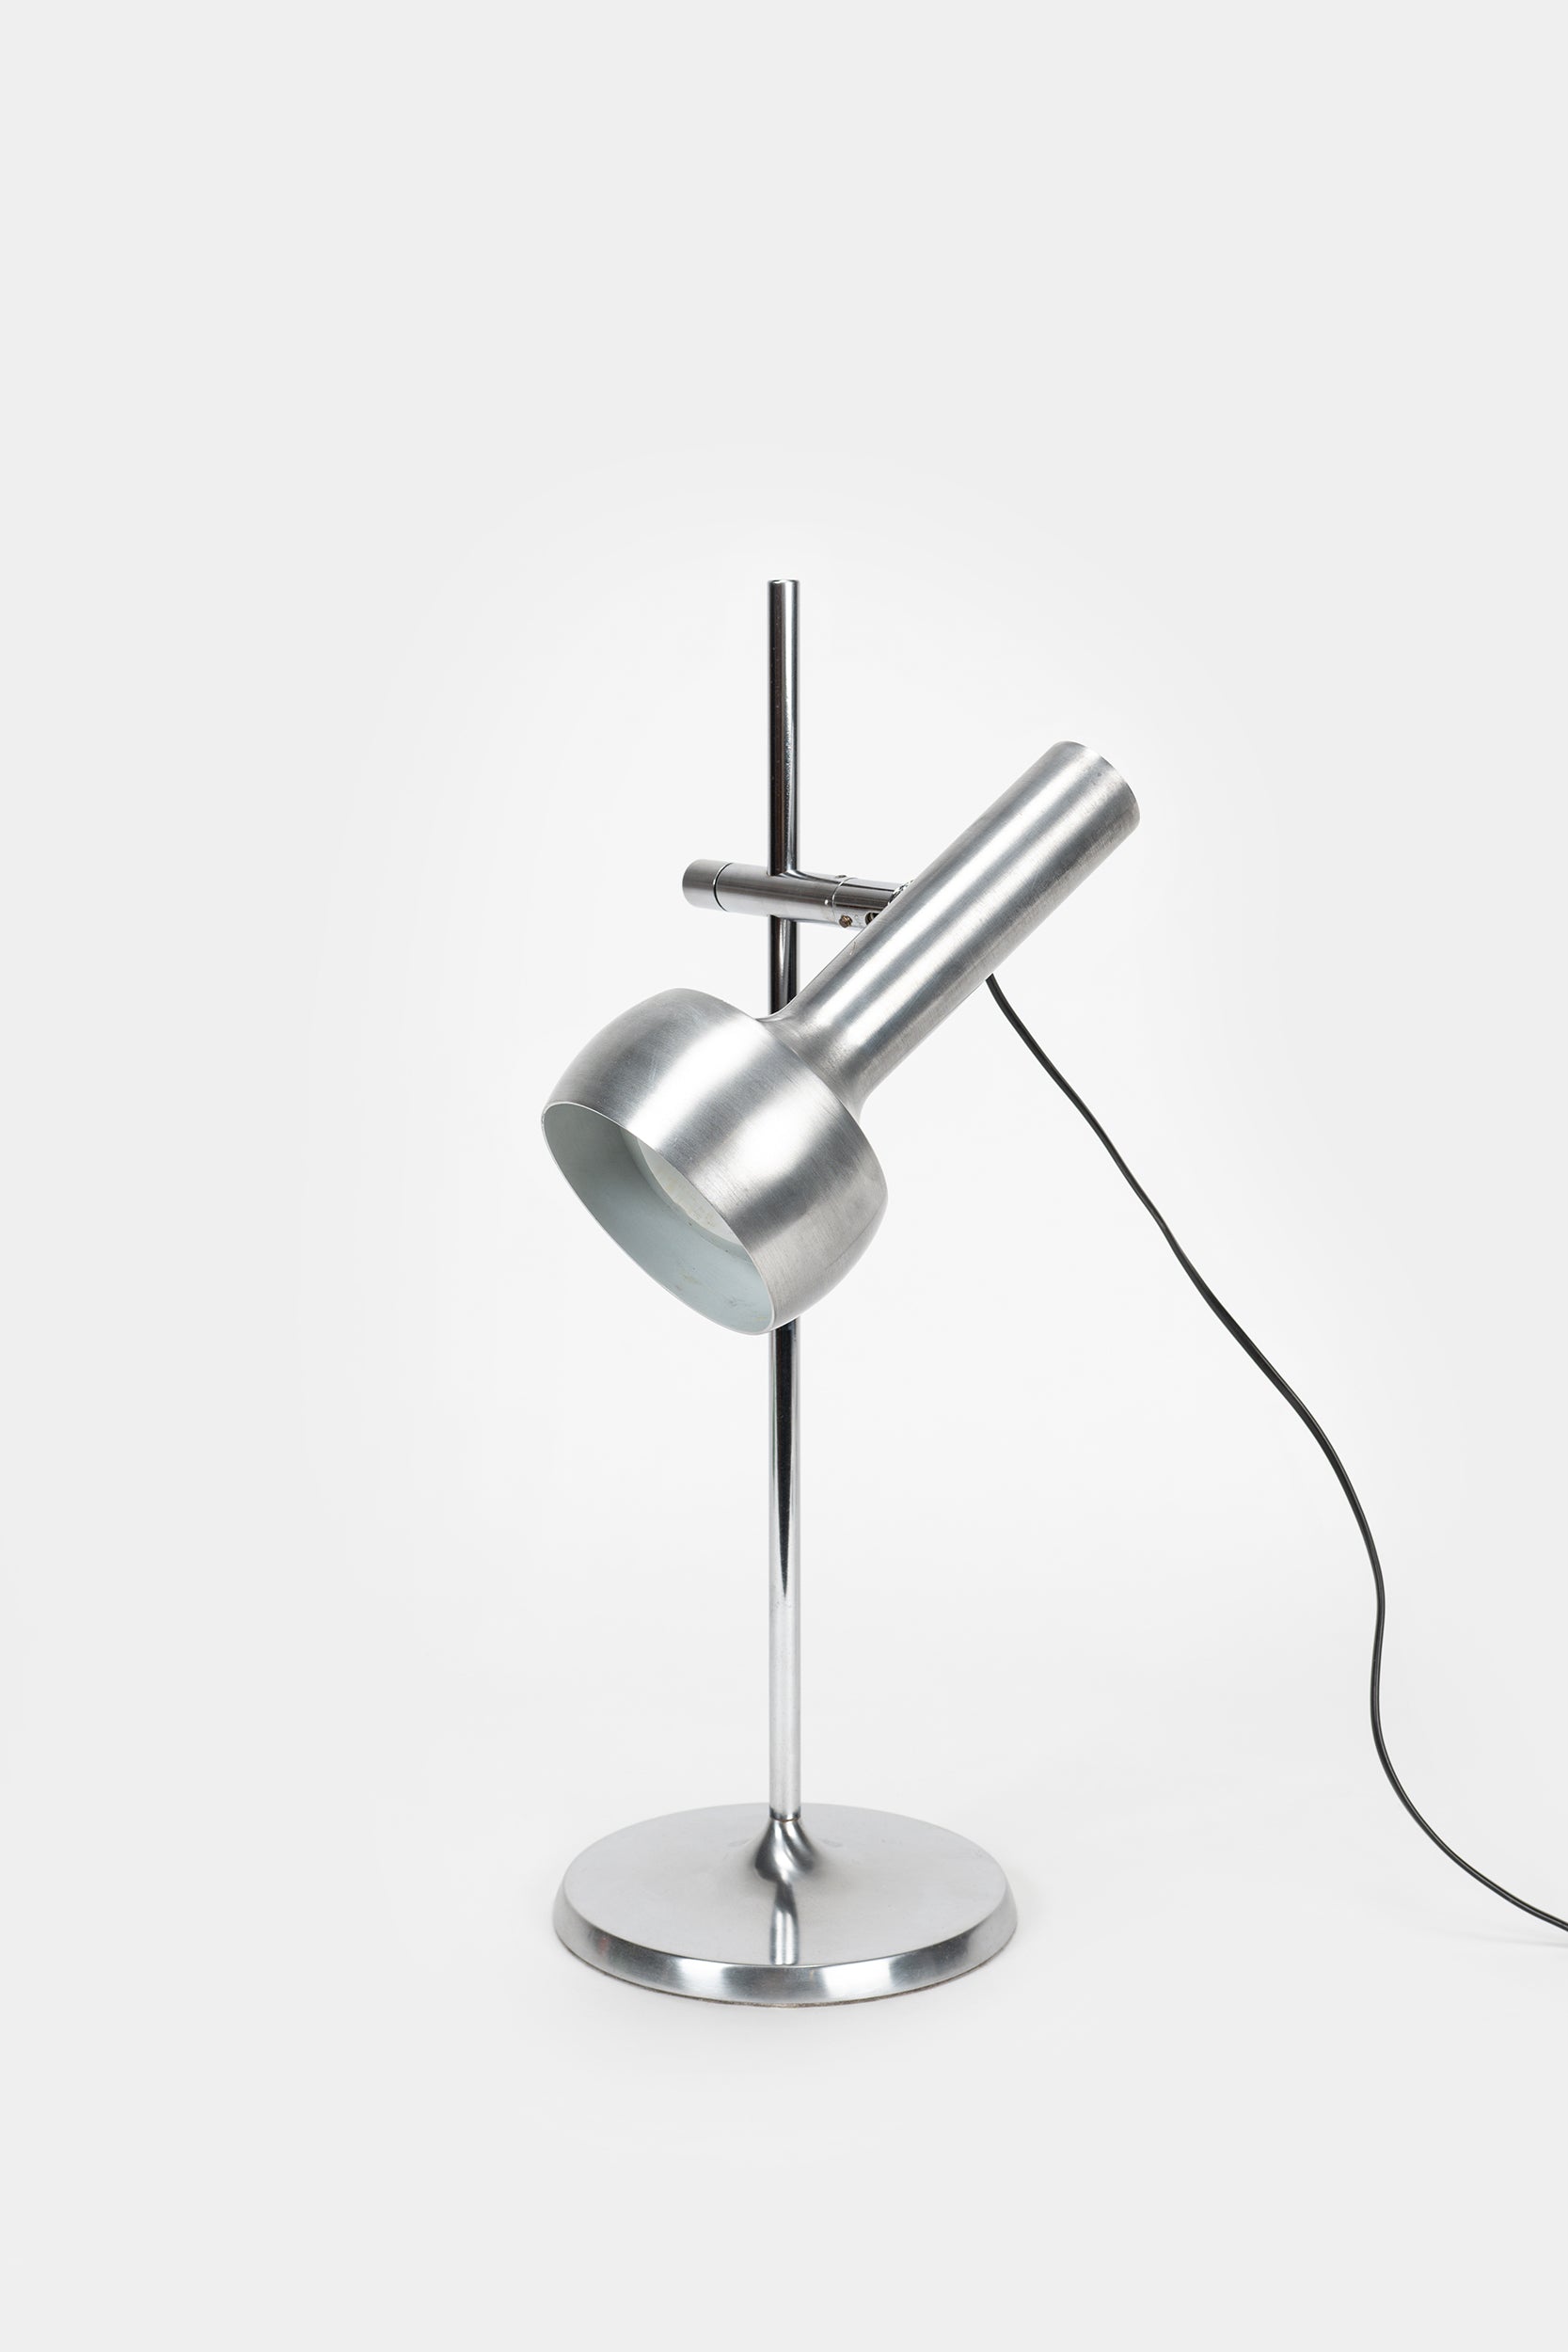 Tischlampe, Swisslamp International, 60er